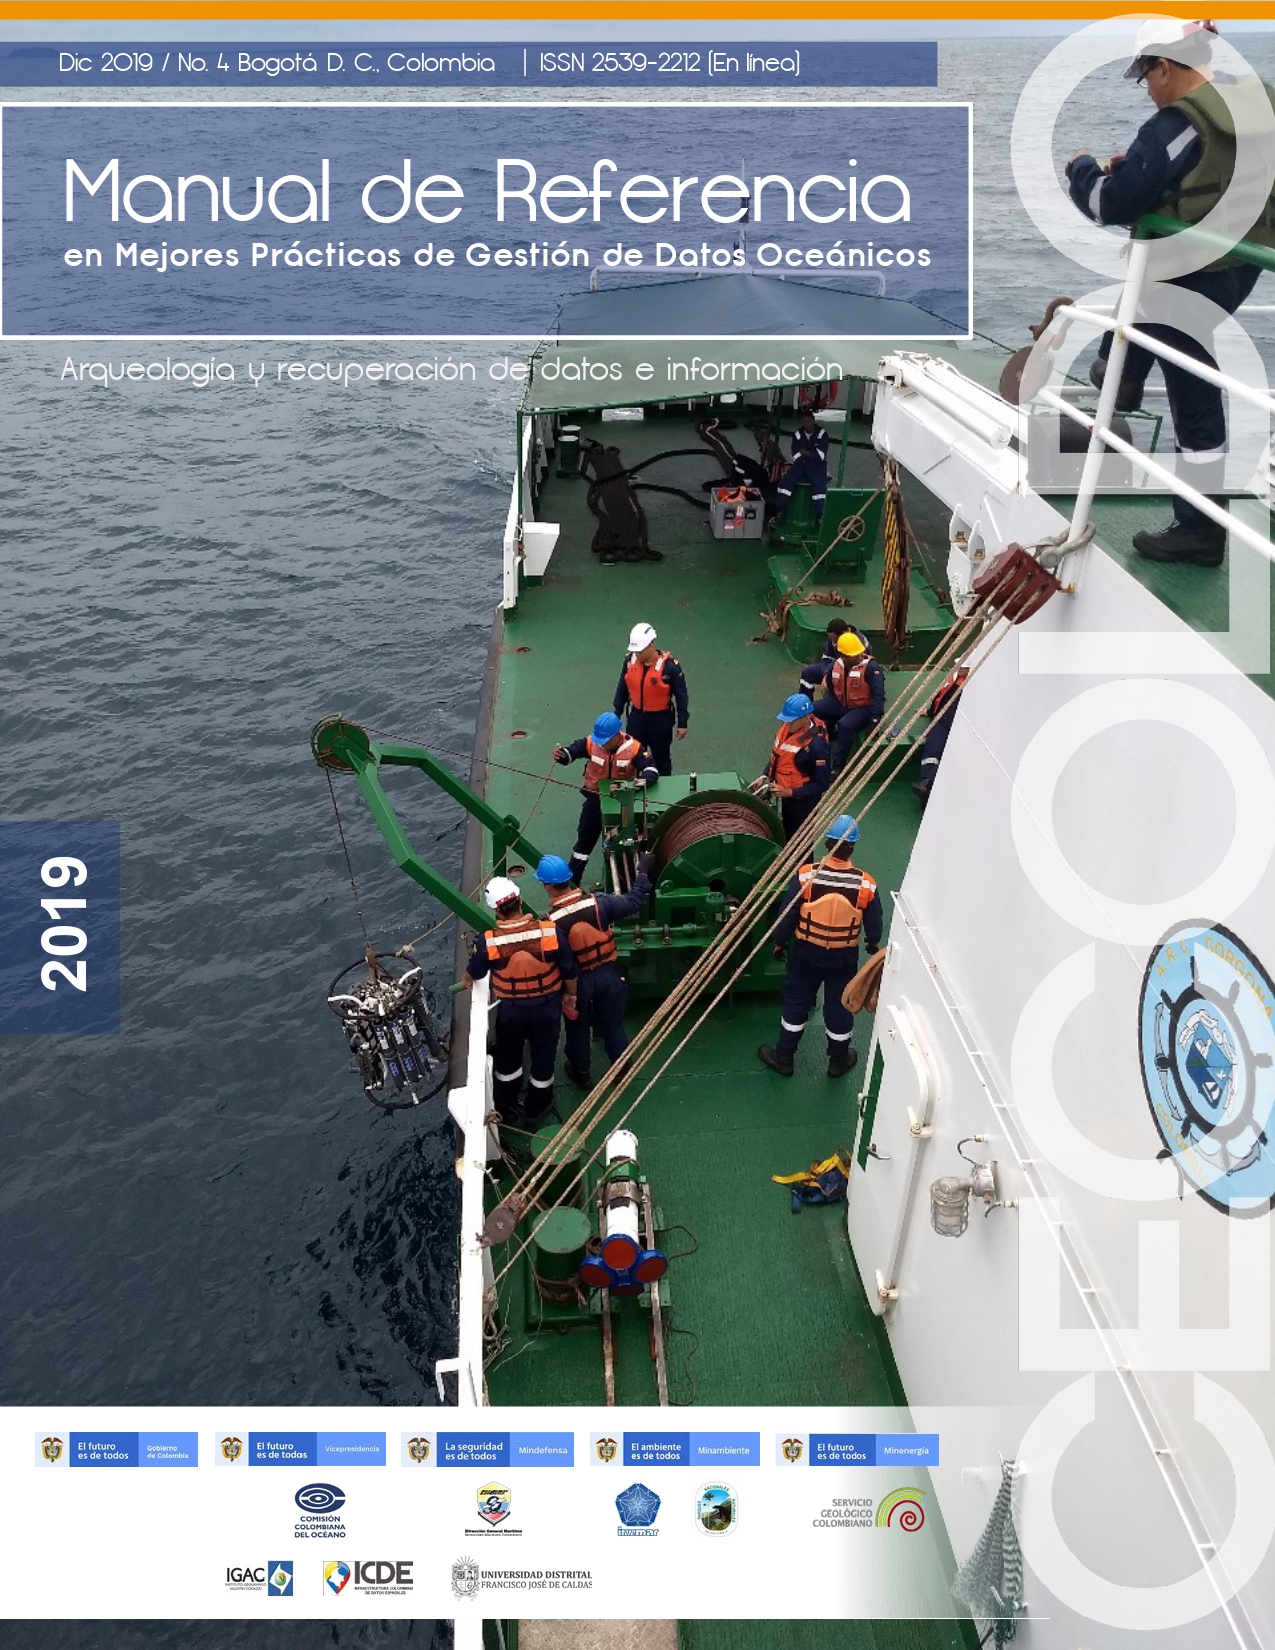 Manual de Referencia en Mejores Prácticas de Gestión de Datos Oceánicos. Número 4 / 2019